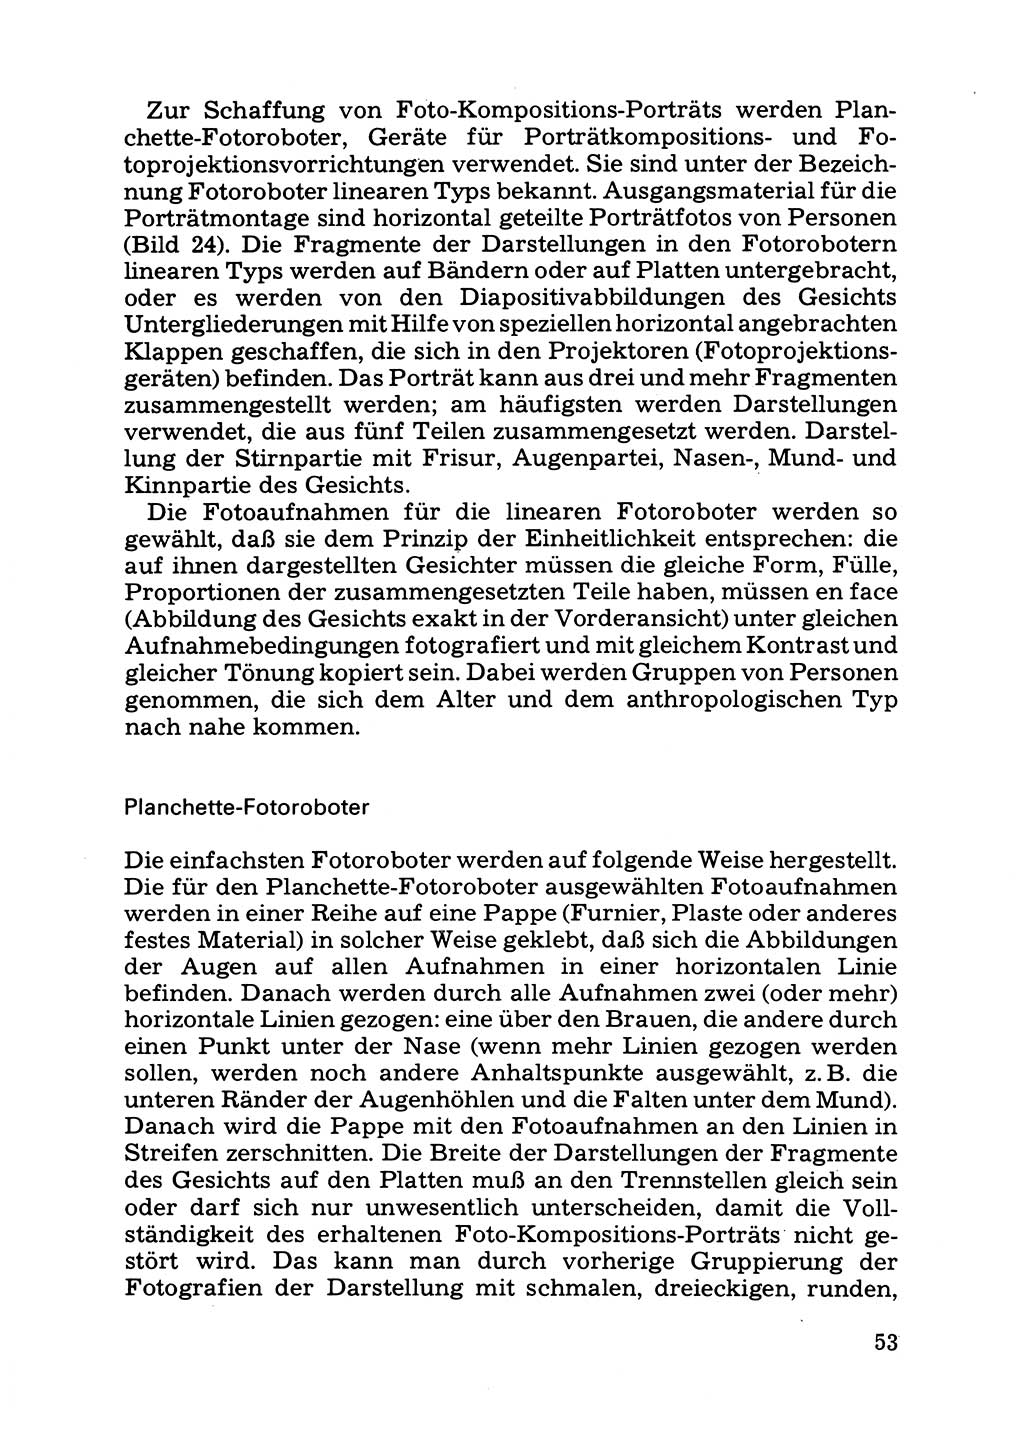 Das subjektive Porträt [Deutsche Demokratische Republik (DDR)] 1981, Seite 53 (Subj. Port. DDR 1981, S. 53)